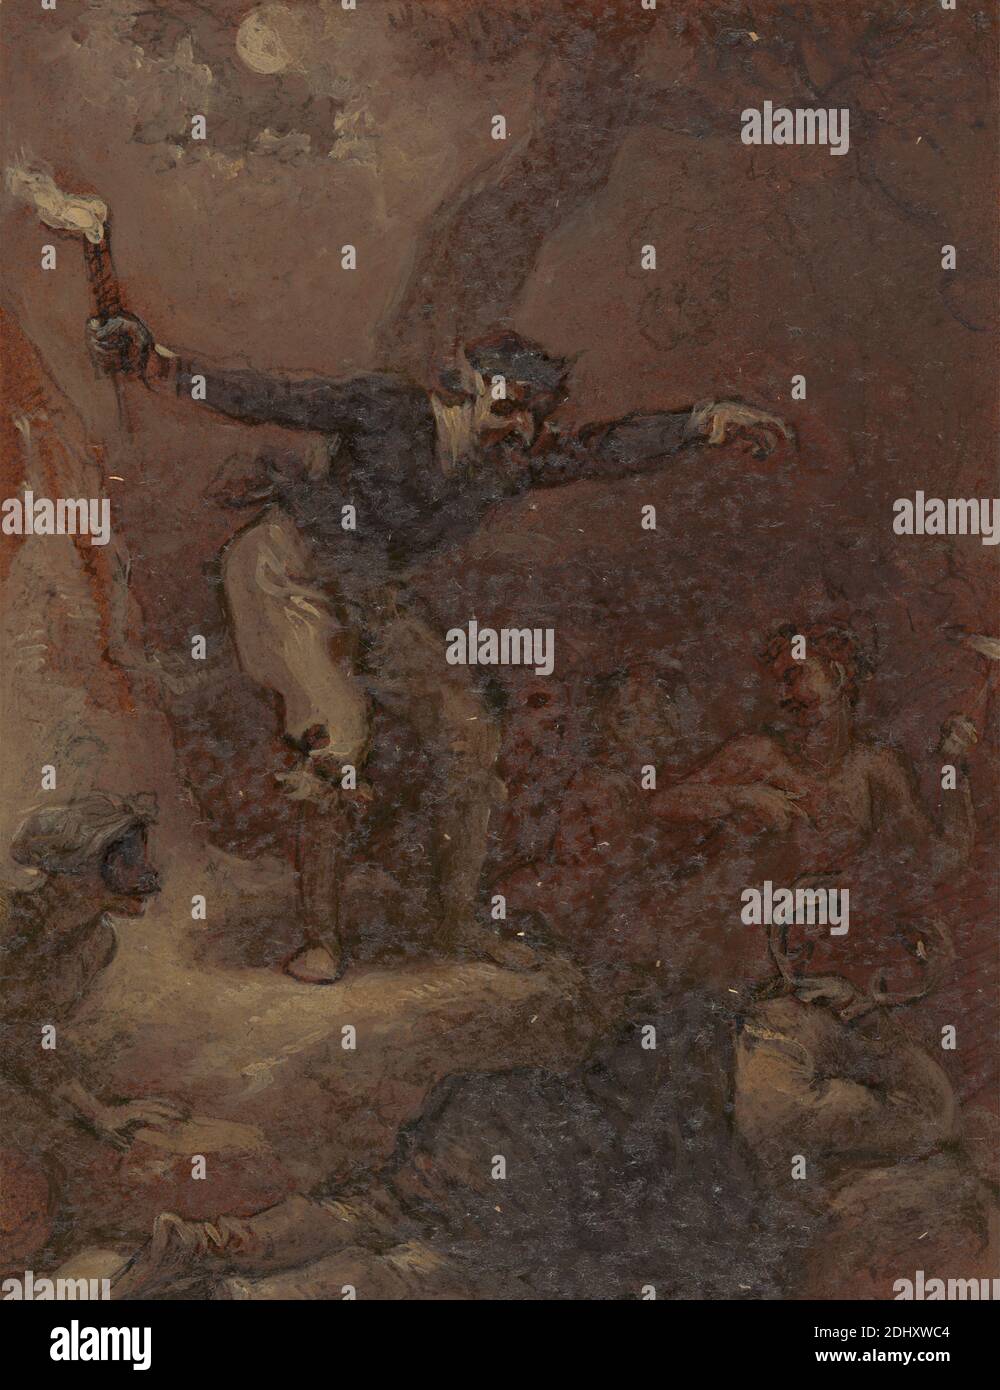 Falstaff at Herne's Oak, Robert Smirke, 1752–1845, British, 1821, encre de plume et brune, lavage brun, gouache et huile sur du papier vélin crème modérément épais, légèrement texturé, collé sur du papier vélin crème modérément épais, légèrement texturé, feuille: 7 5/16 x 4 1/2 pouces (18.6 x 11.4 cm) et image: 5 1/4 x 4 1/8 pouces (13.3 x 10.4 cm), enfants, costume, fées, étude de figure, forêt, humour, illusion, thème littéraire, masque, hommes, chêne, obèse, pièces de William Shakespeare, les femmes Joyeuses de Windsor, pièce de William Shakespeare, torche, tricking, femmes Banque D'Images